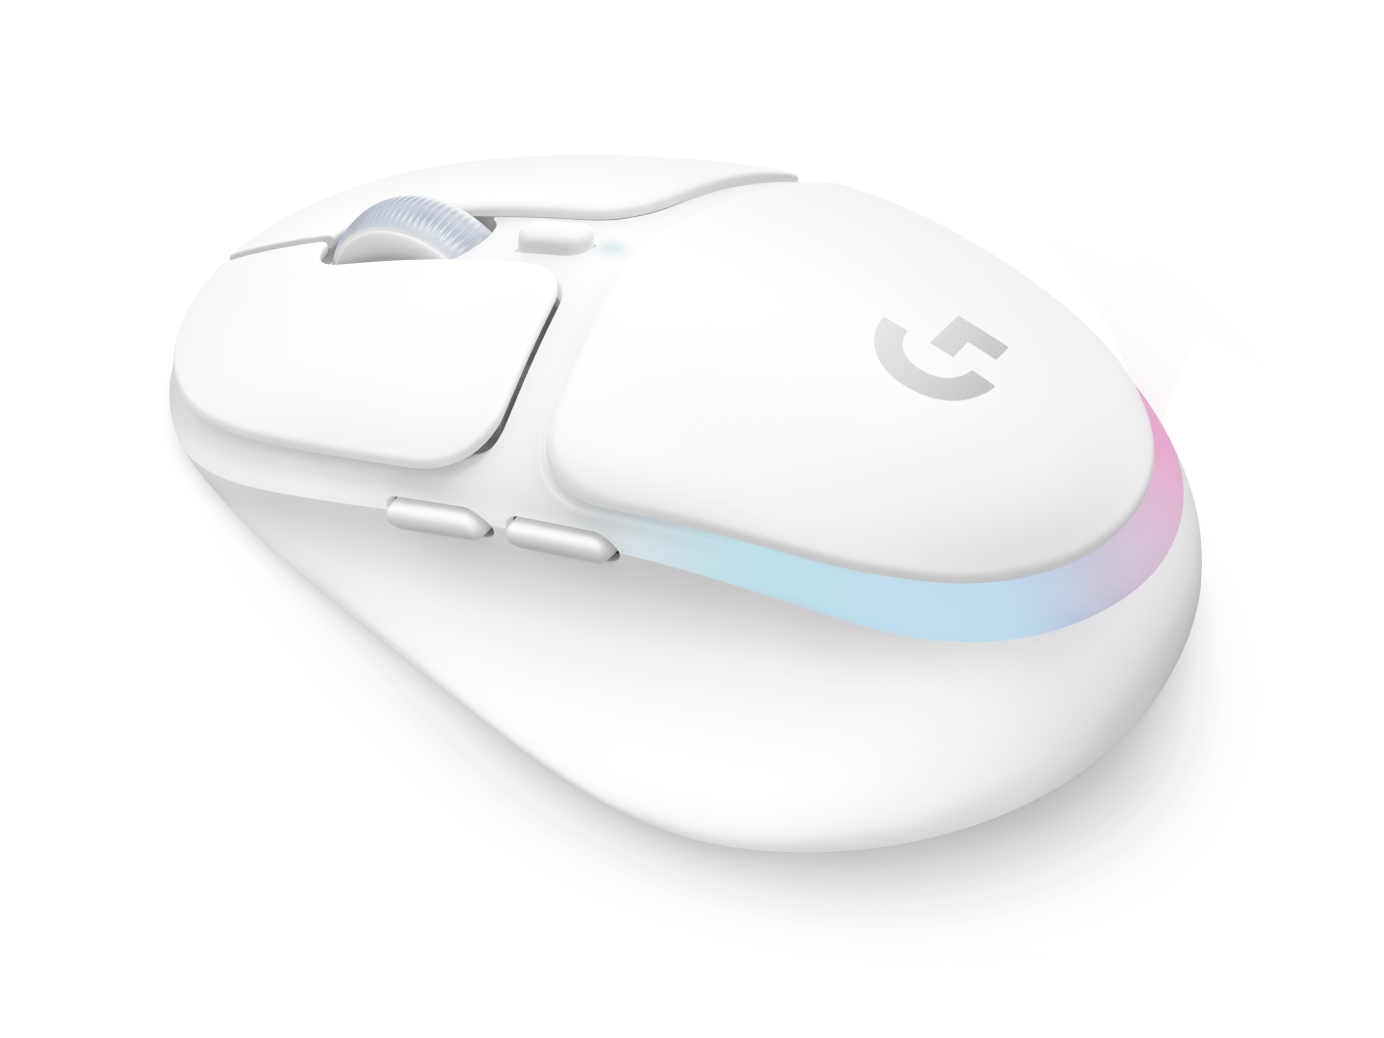 G705 ワイヤレス ゲーミング マウス